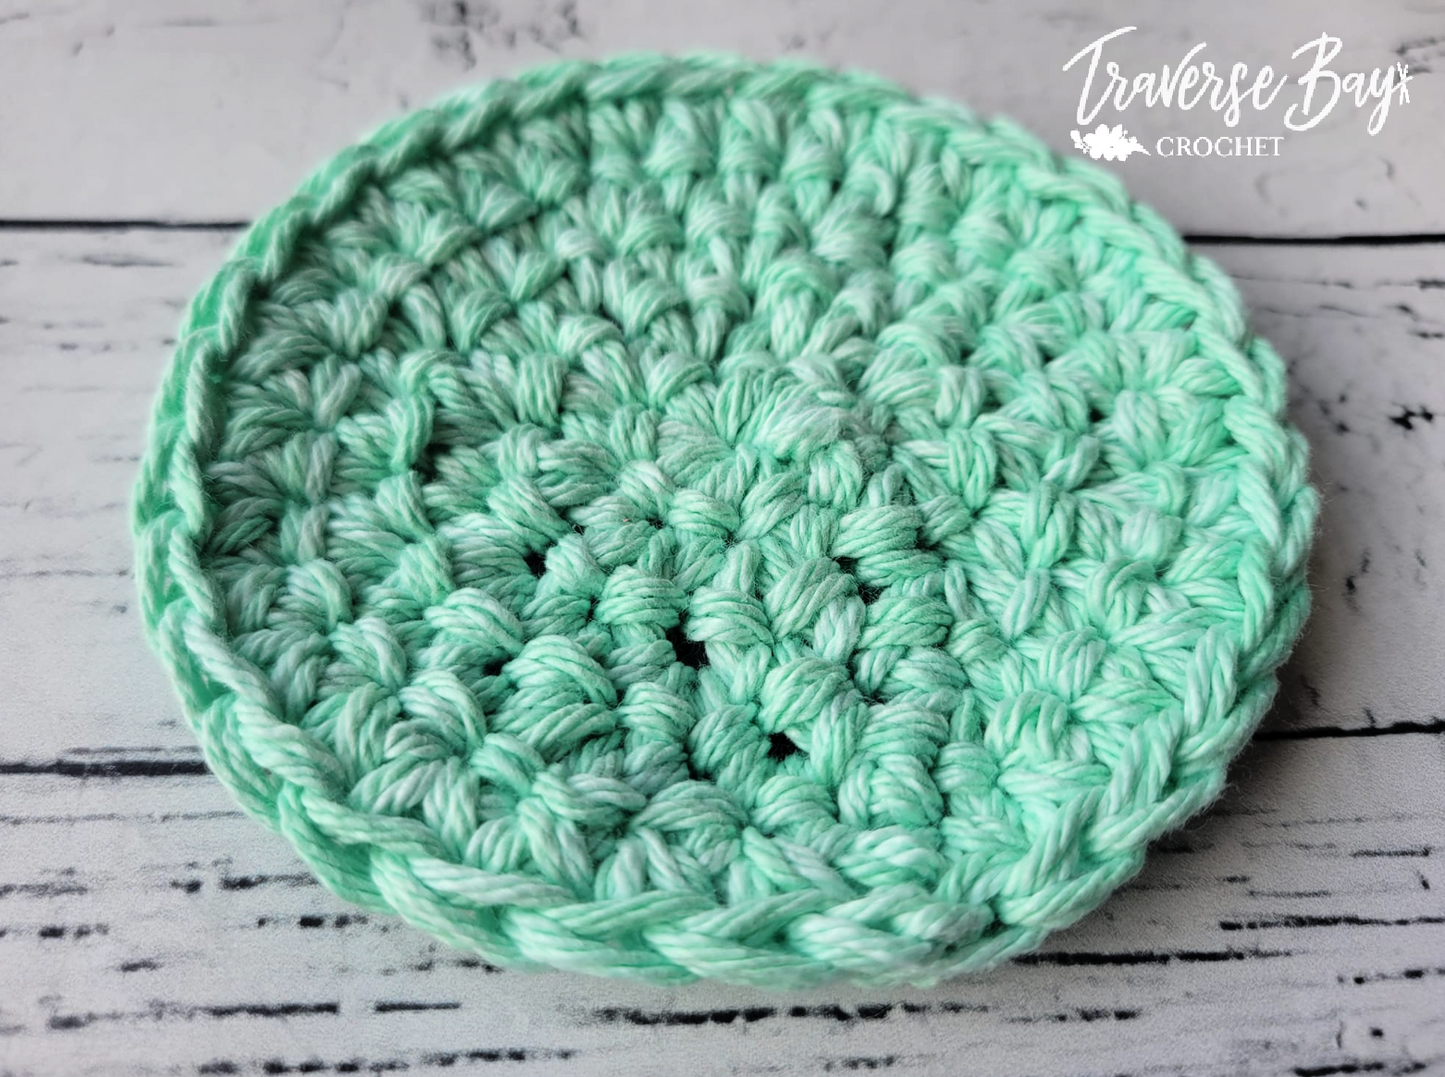 Easy Crochet Coaster Pattern